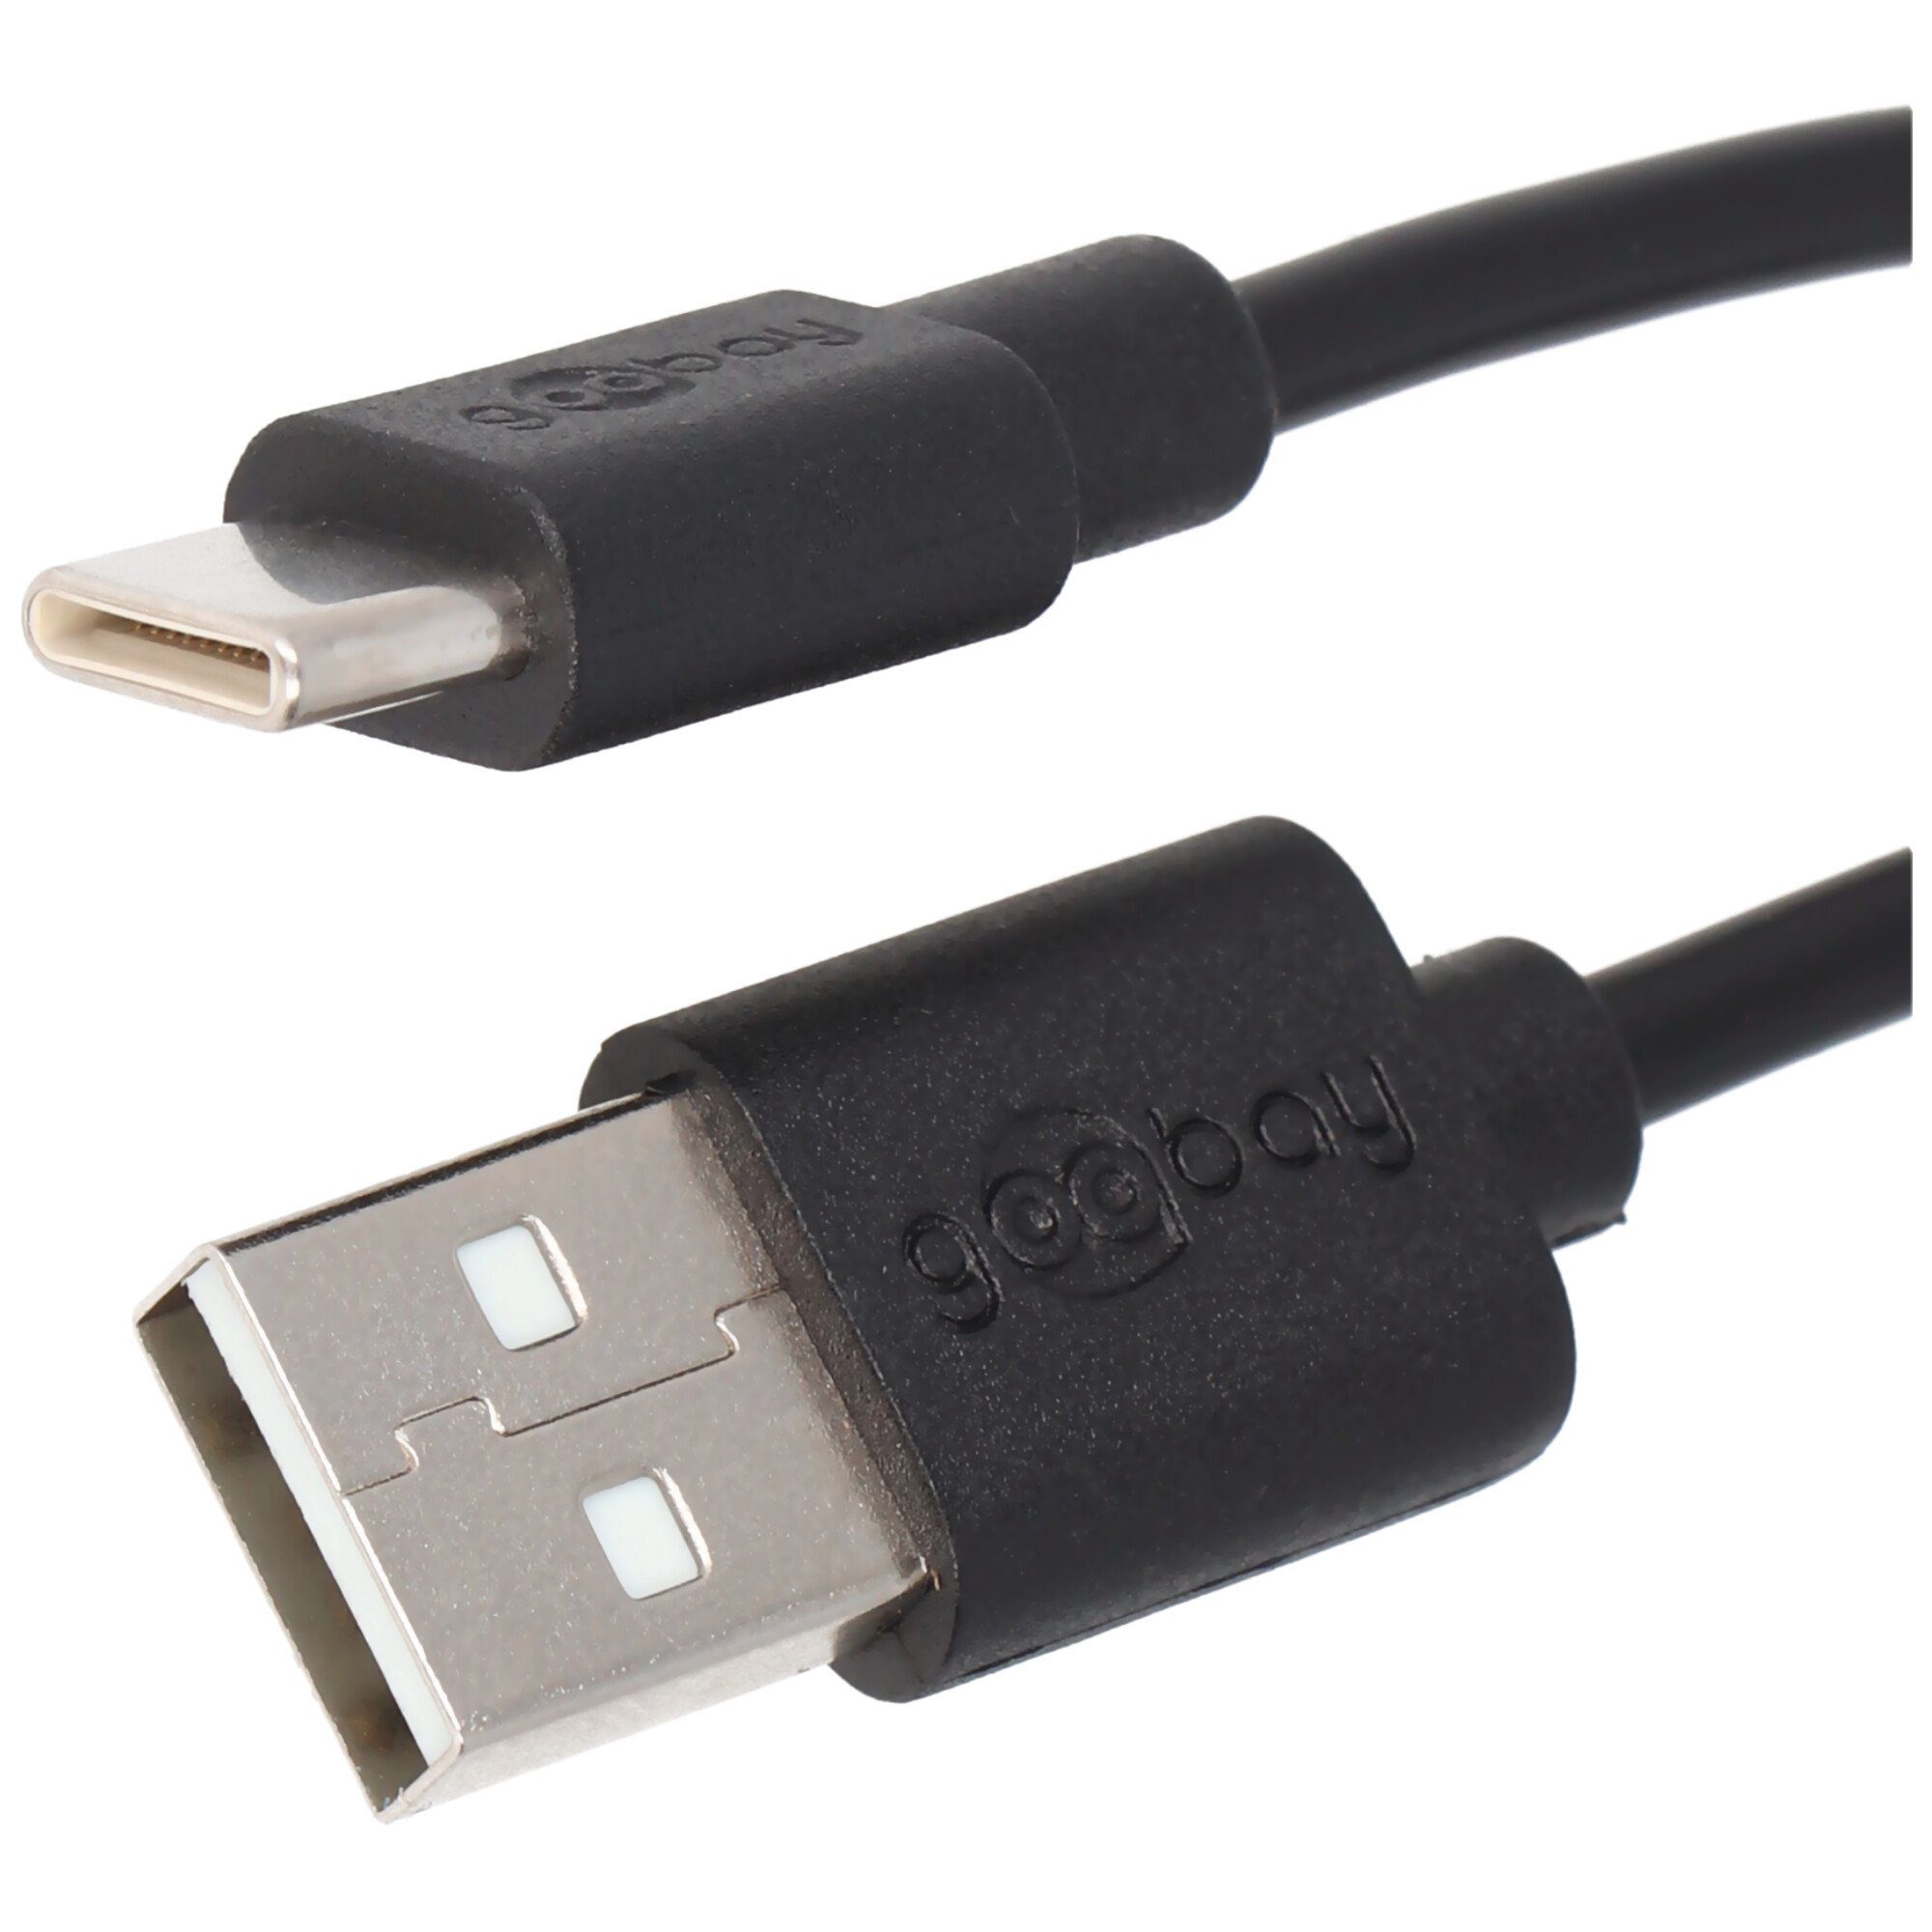 Lade- für USB-C alle mit Ansch Akku-Ladestation und Synchronisationskabel Geräte USB-C Goobay